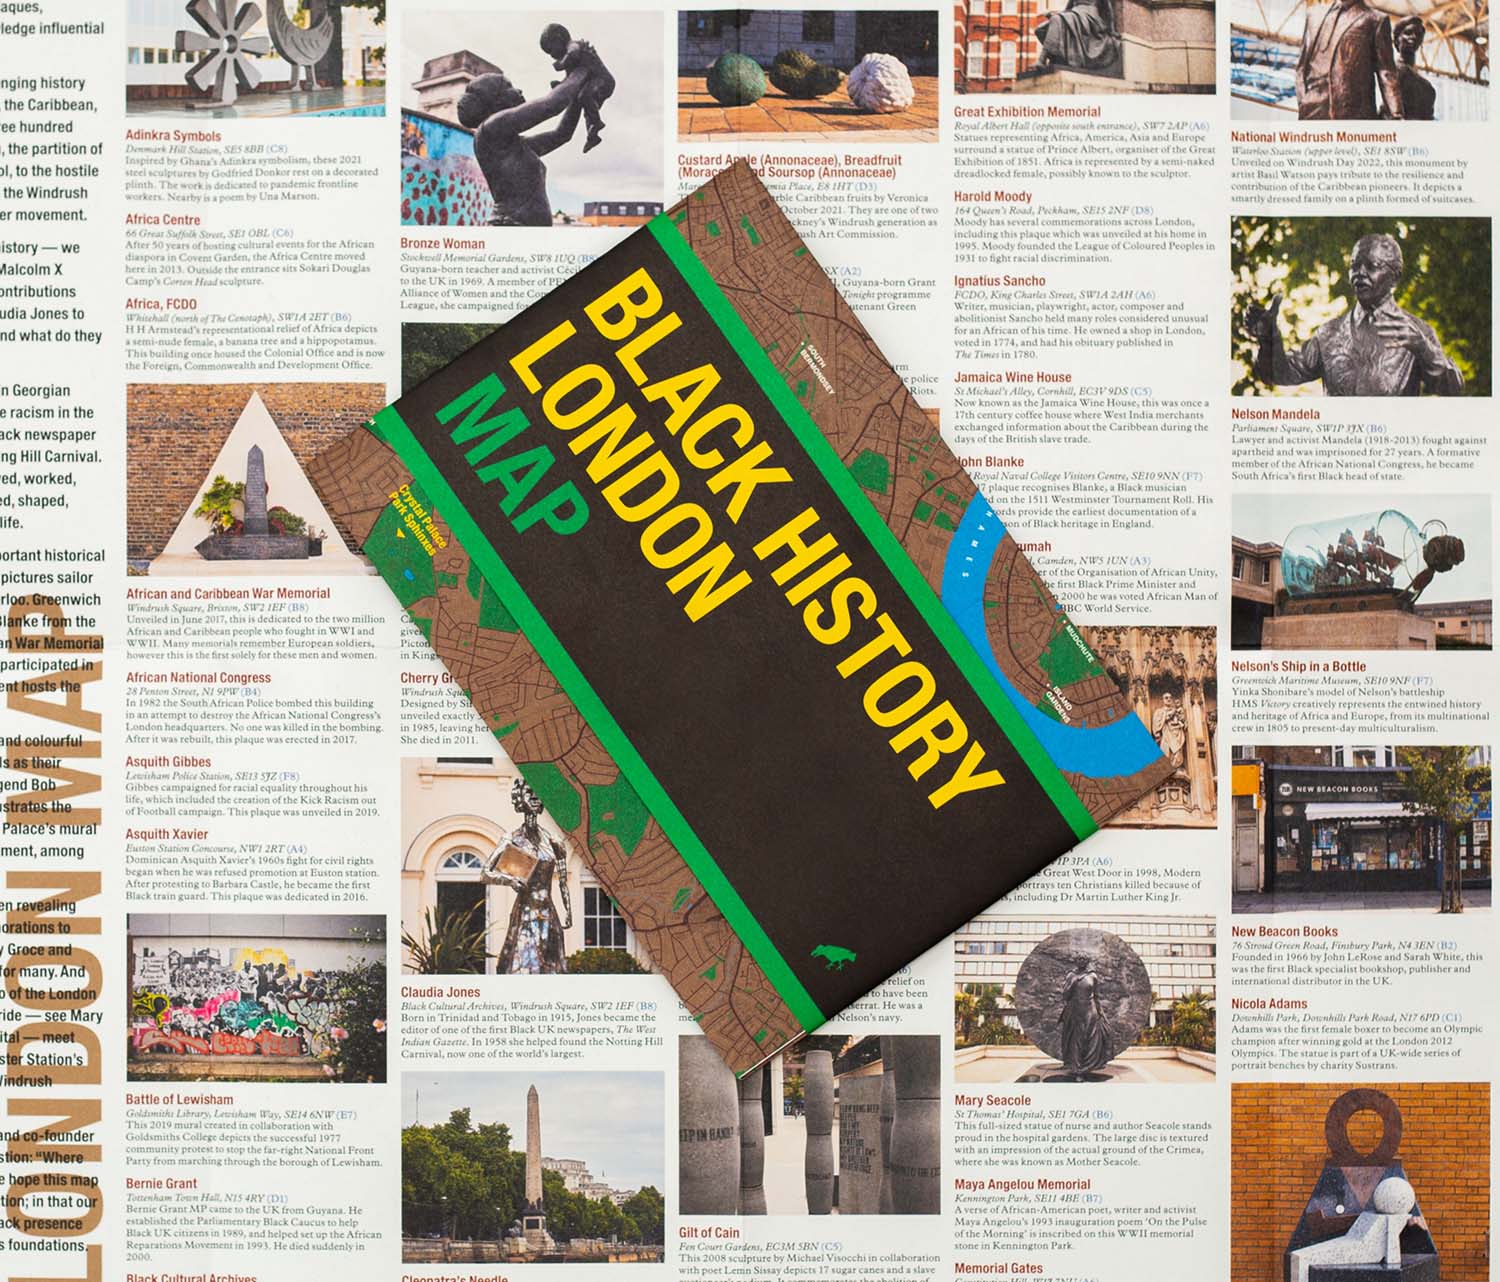 《黑人历史伦敦地图》，乔迪·伯顿和艾薇儿·南顿，蓝鸦传媒出版